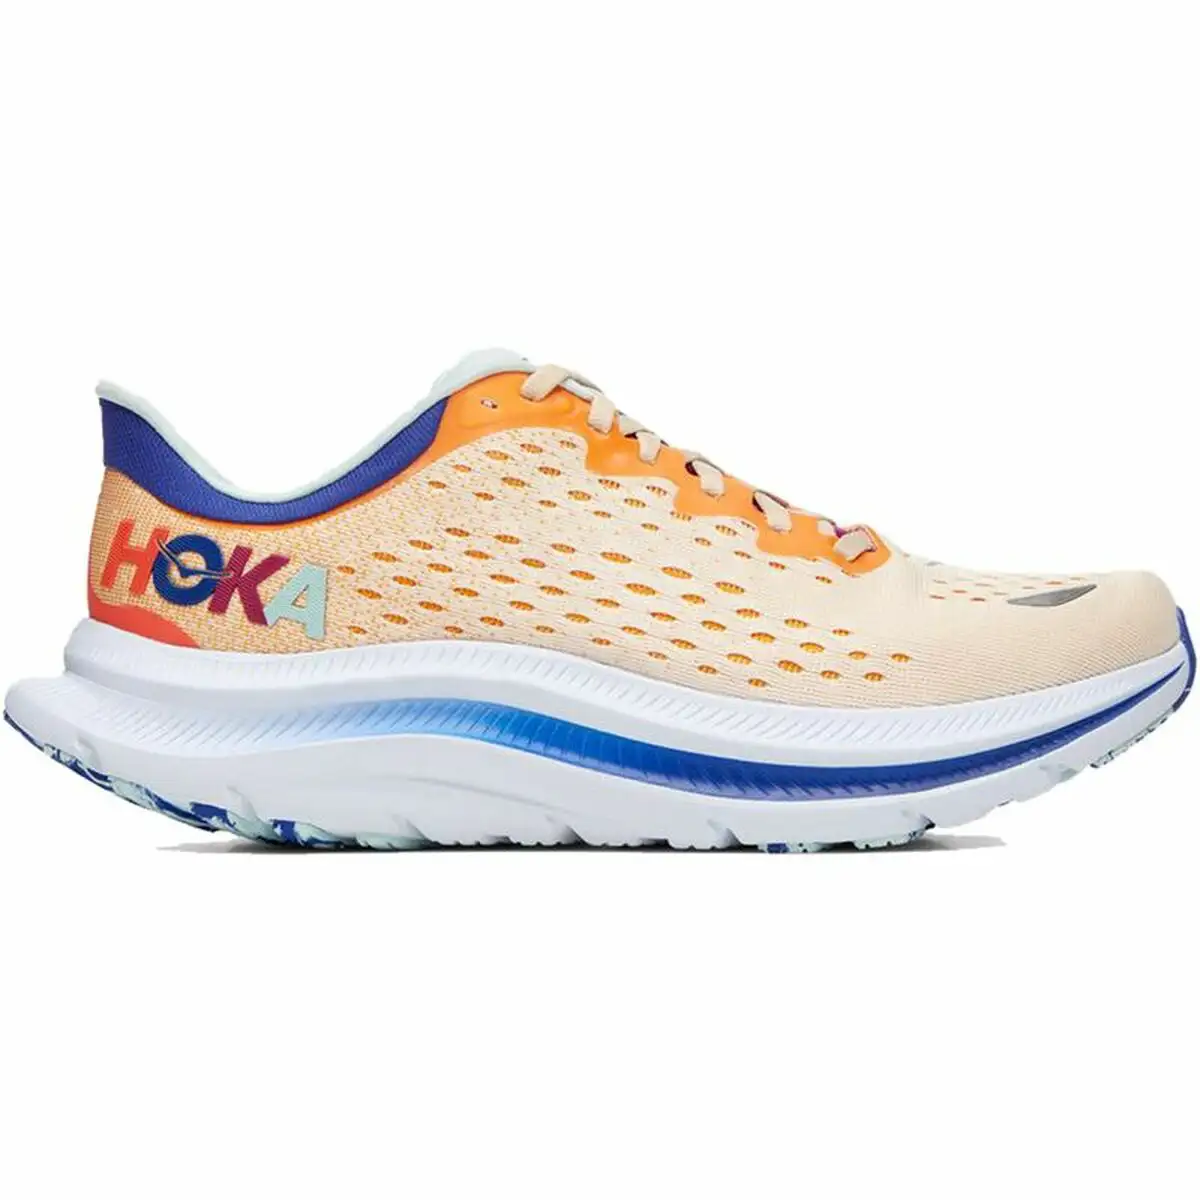 Chaussures de running pour adultes hoka kawana orange_8787. DIAYTAR SENEGAL - L'Odyssée du Shopping à Votre Portée. Parcourez notre boutique en ligne et partez à la découverte d'articles qui rendront chaque jour spécial.